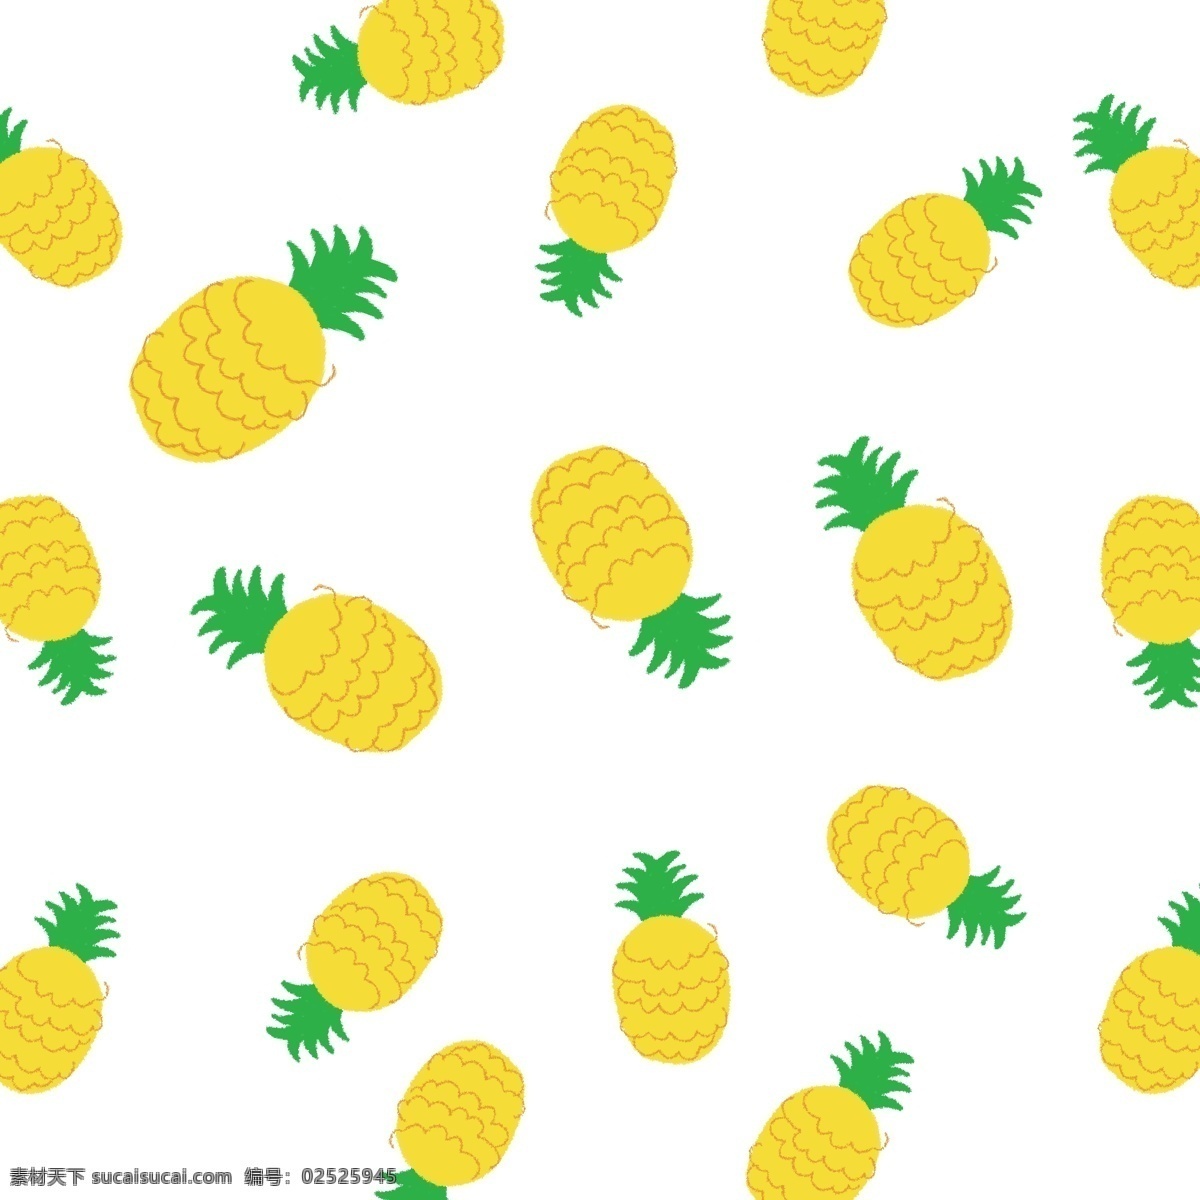 清新 手绘 菠萝 背景 菠萝背景 水果背景 夏天水果 夏季水果 海报背景 农产品 果蔬 瓜果 农业 种植